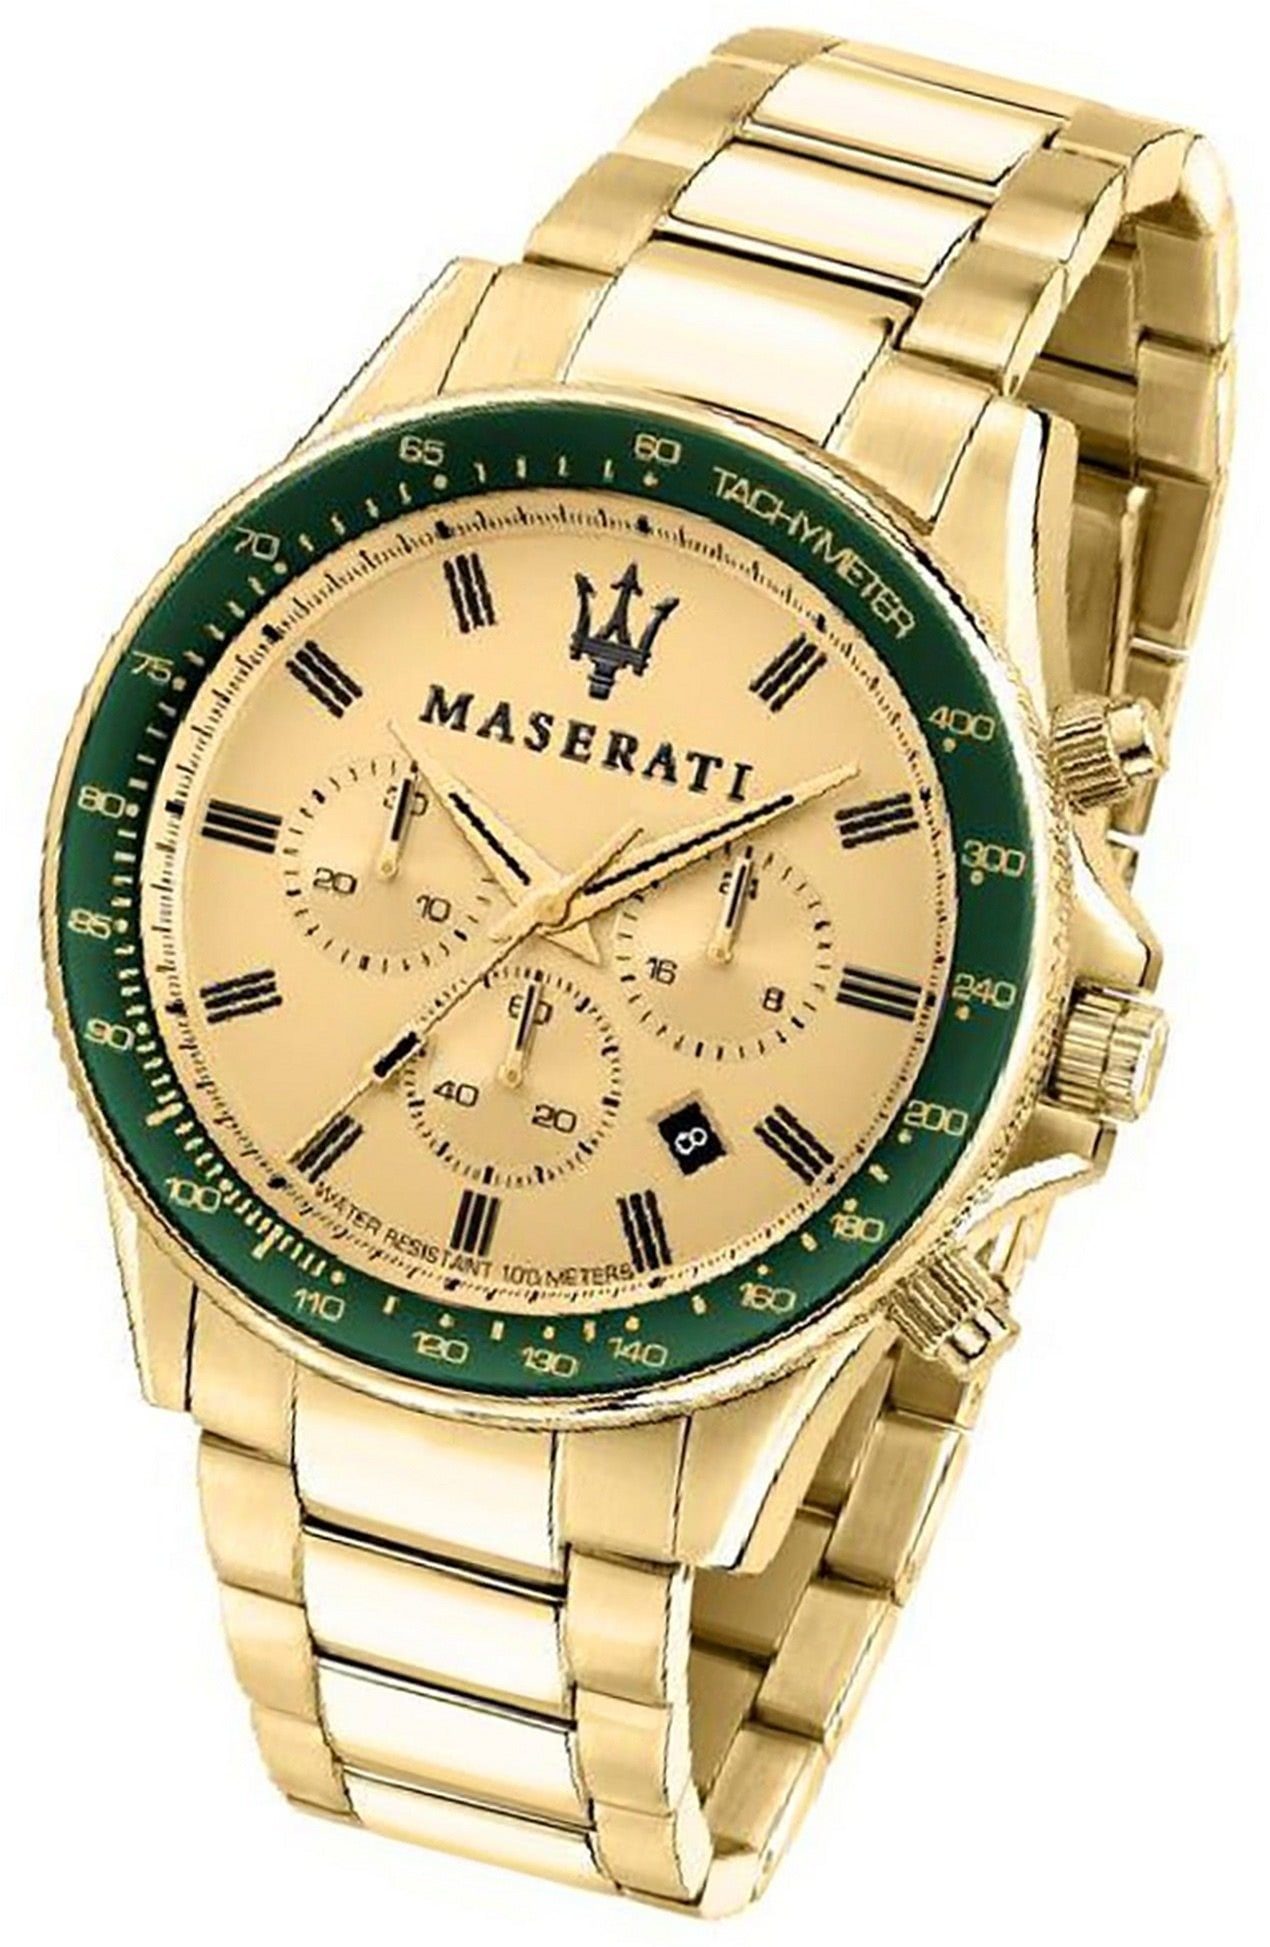 MASERATI Armband-Uhr, Edelstahl rundes groß Herrenuhr (ca. 44mm) gelbgold Maserati Gehäuse, Chronograph Edelstahlarmband,